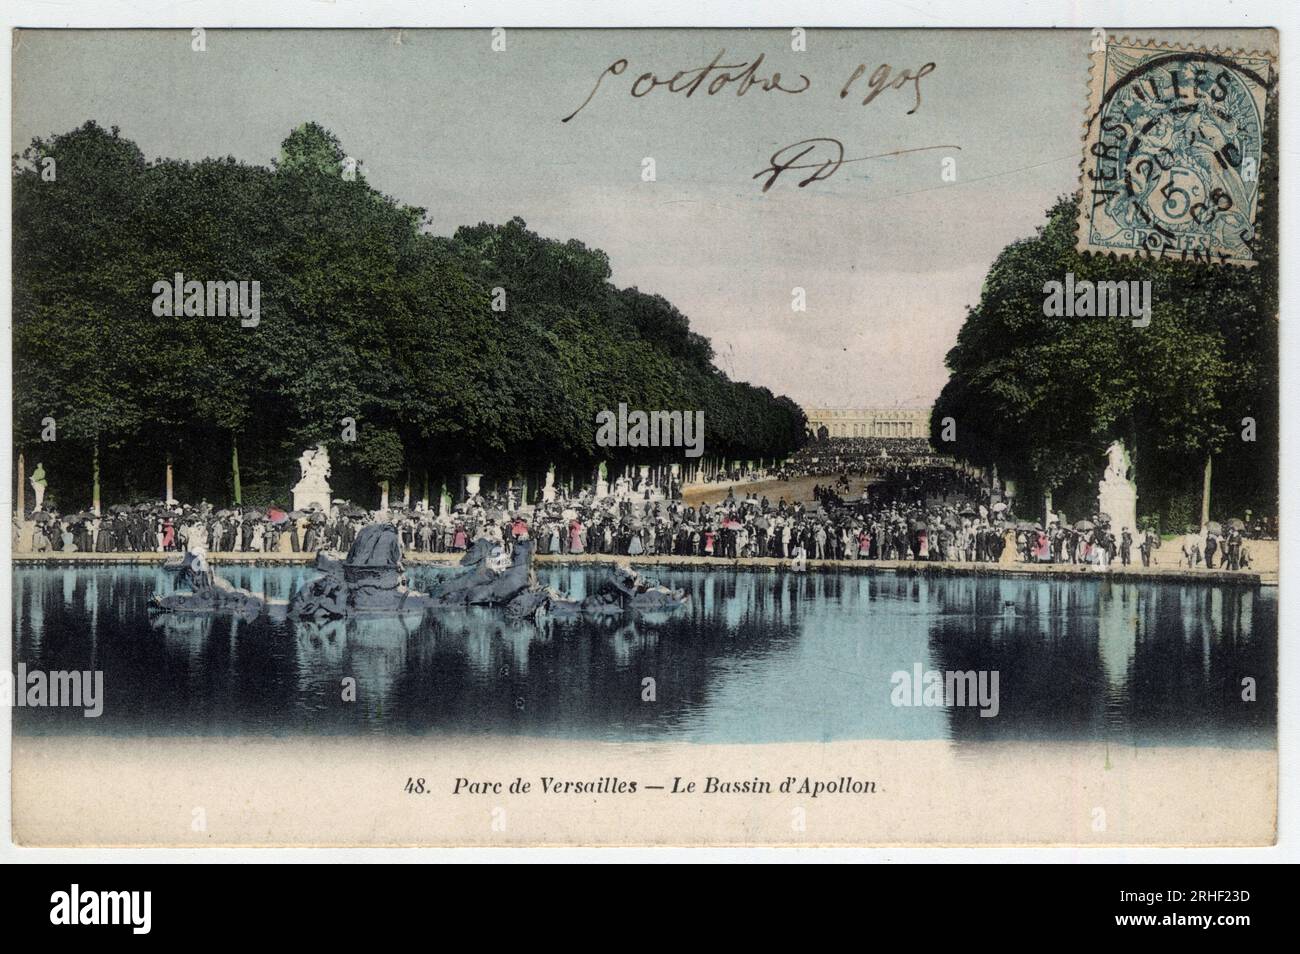 Chateau de Versailles : visiteurs devant le bassin du char d'Apollon dans le parc - Carte postale datee 1905 Stock Photo